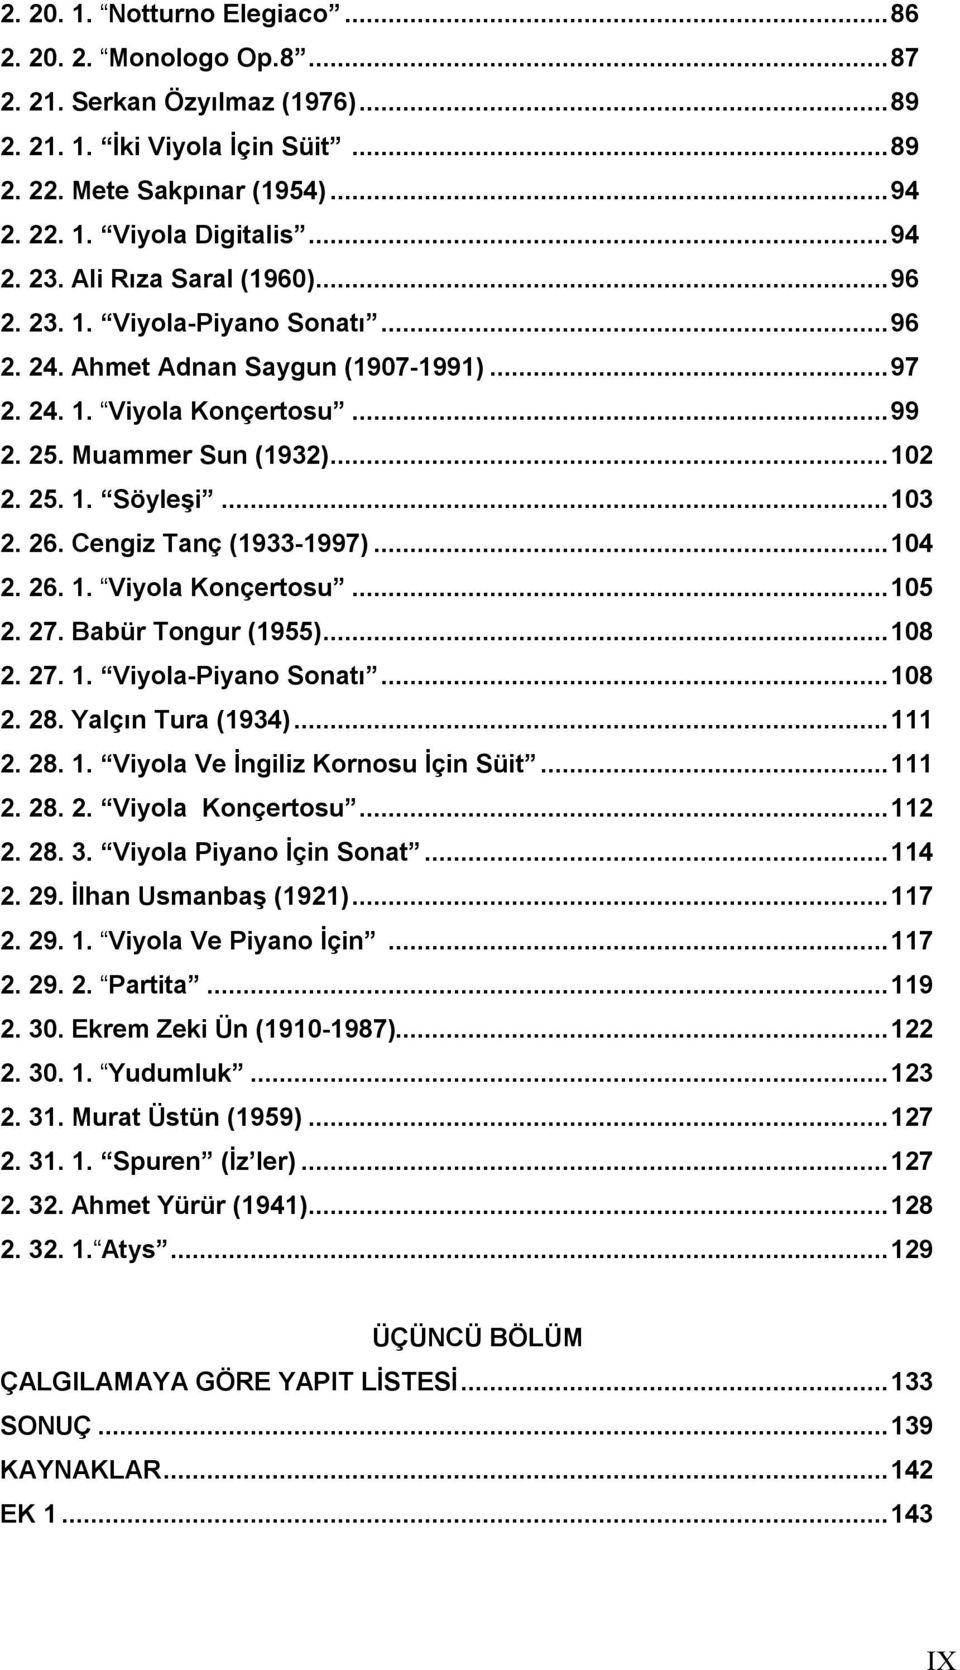 26. Cengiz Tanç (1933-1997)...104 2. 26. 1. Viyola Konçertosu...105 2. 27. Babür Tongur (1955)...108 2. 27. 1. Viyola-Piyano Sonatı...108 2. 28. Yalçın Tura (1934)...111 2. 28. 1. Viyola Ve İngiliz Kornosu İçin Süit.